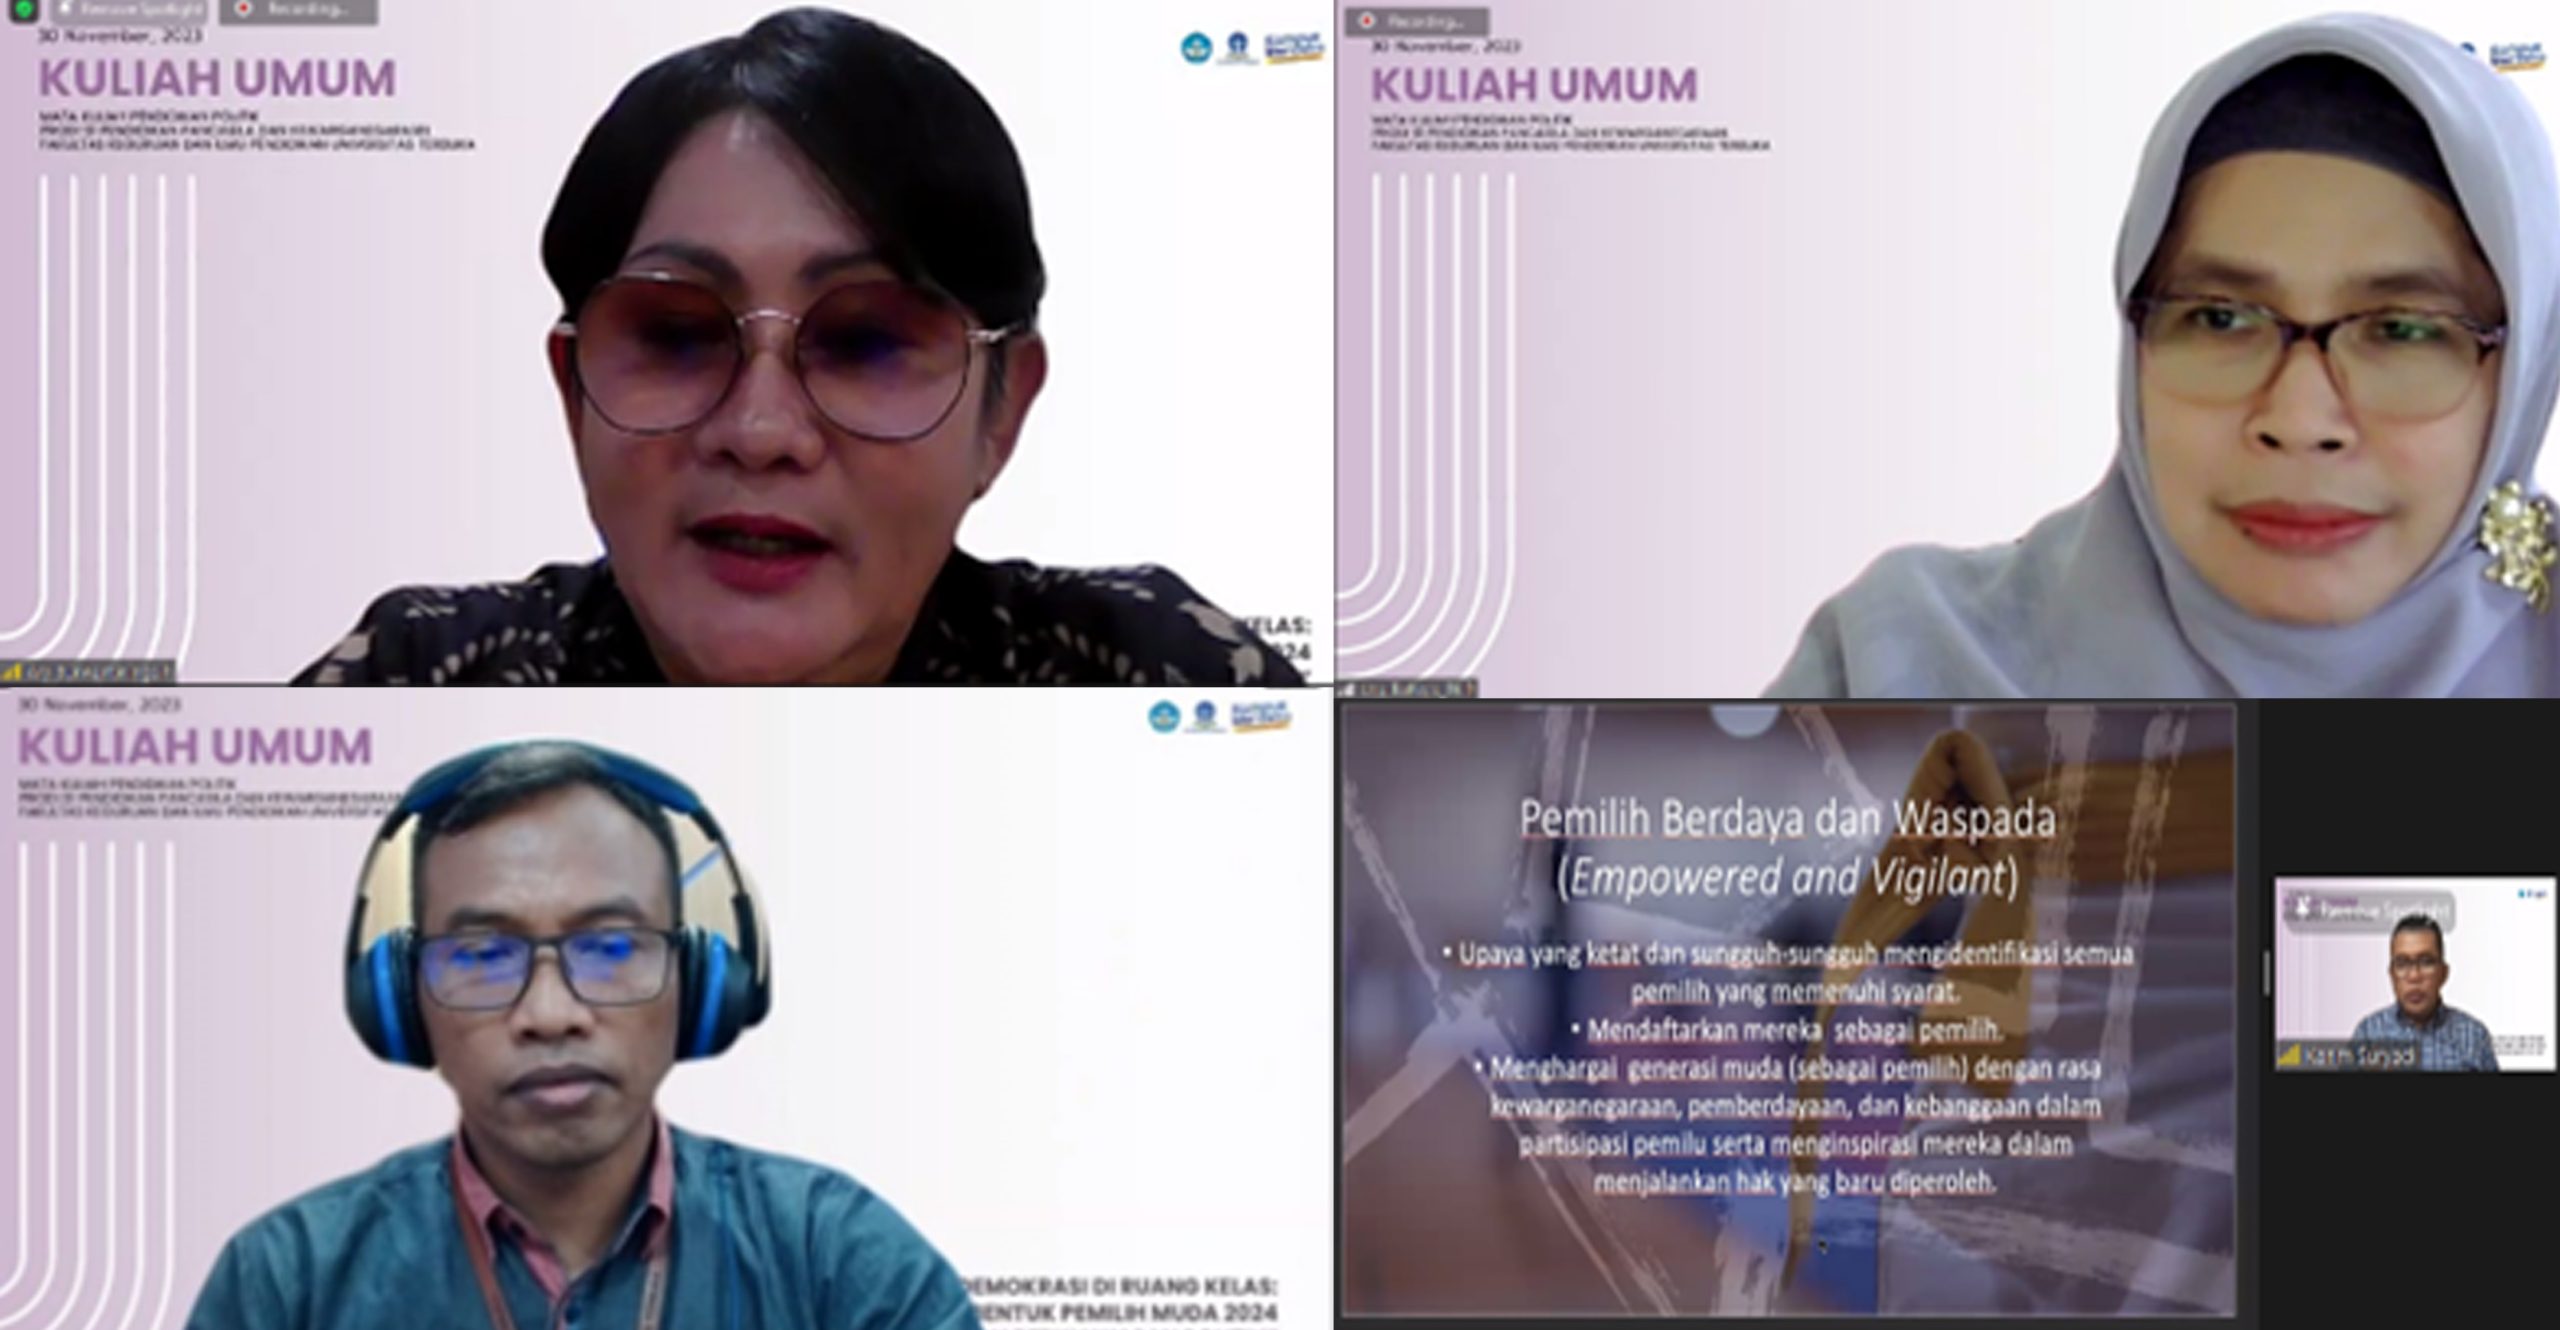 Kuliah Umum Prodi S1 PPKn FKIP Universitas Terbuka: Bentuk Edukasi Demokrasi dan Politik Menjelang Pemilu Indonesia 2024